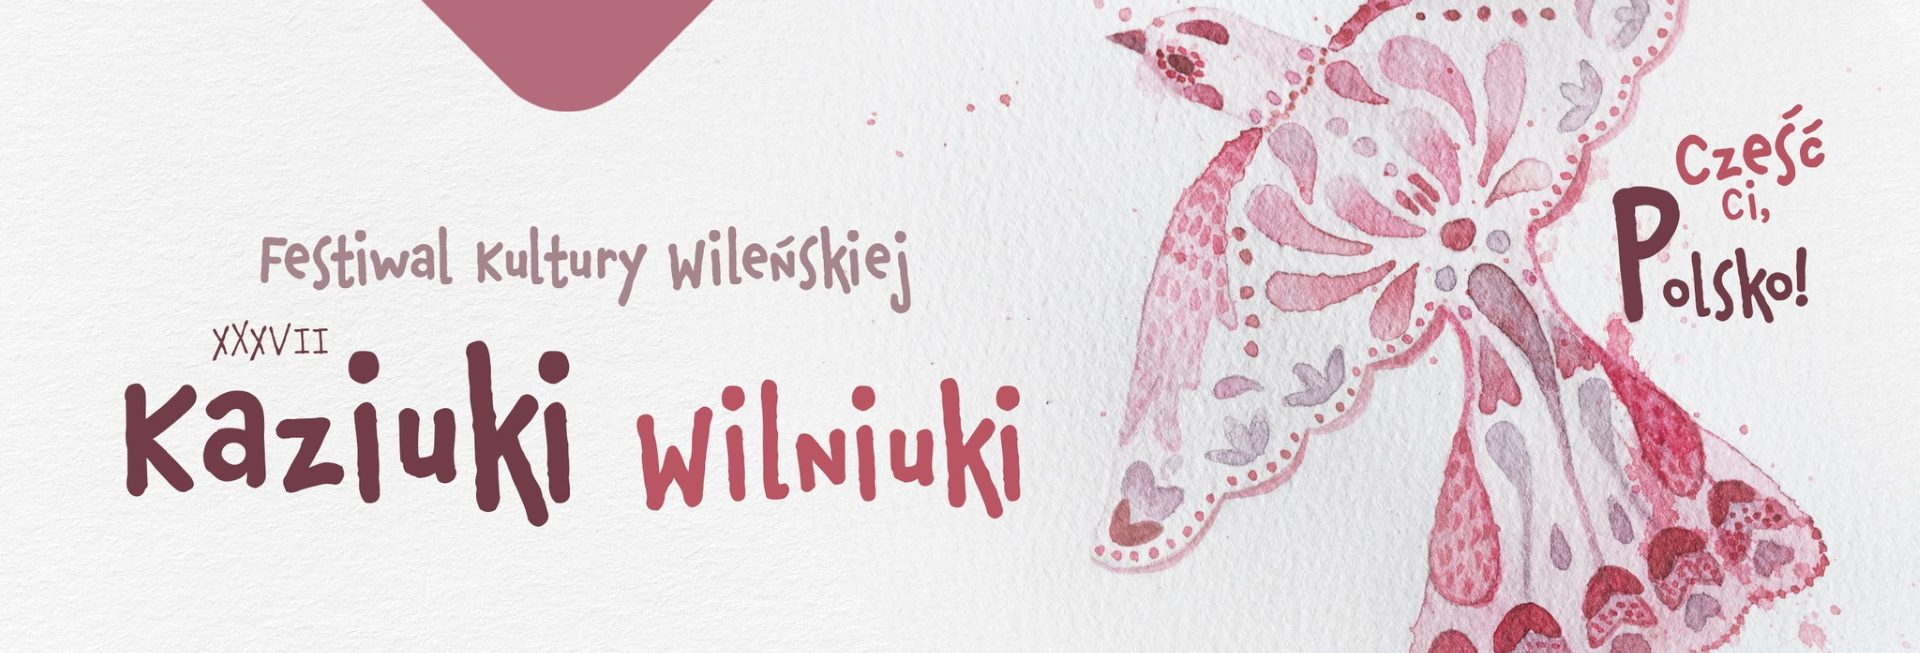 Plakat graficzny zapraszający na 37. edycję Festiwalu Kultury Wileńskiej "Kaziuki Wilniuki" Lidzbark Warmiński 2022.